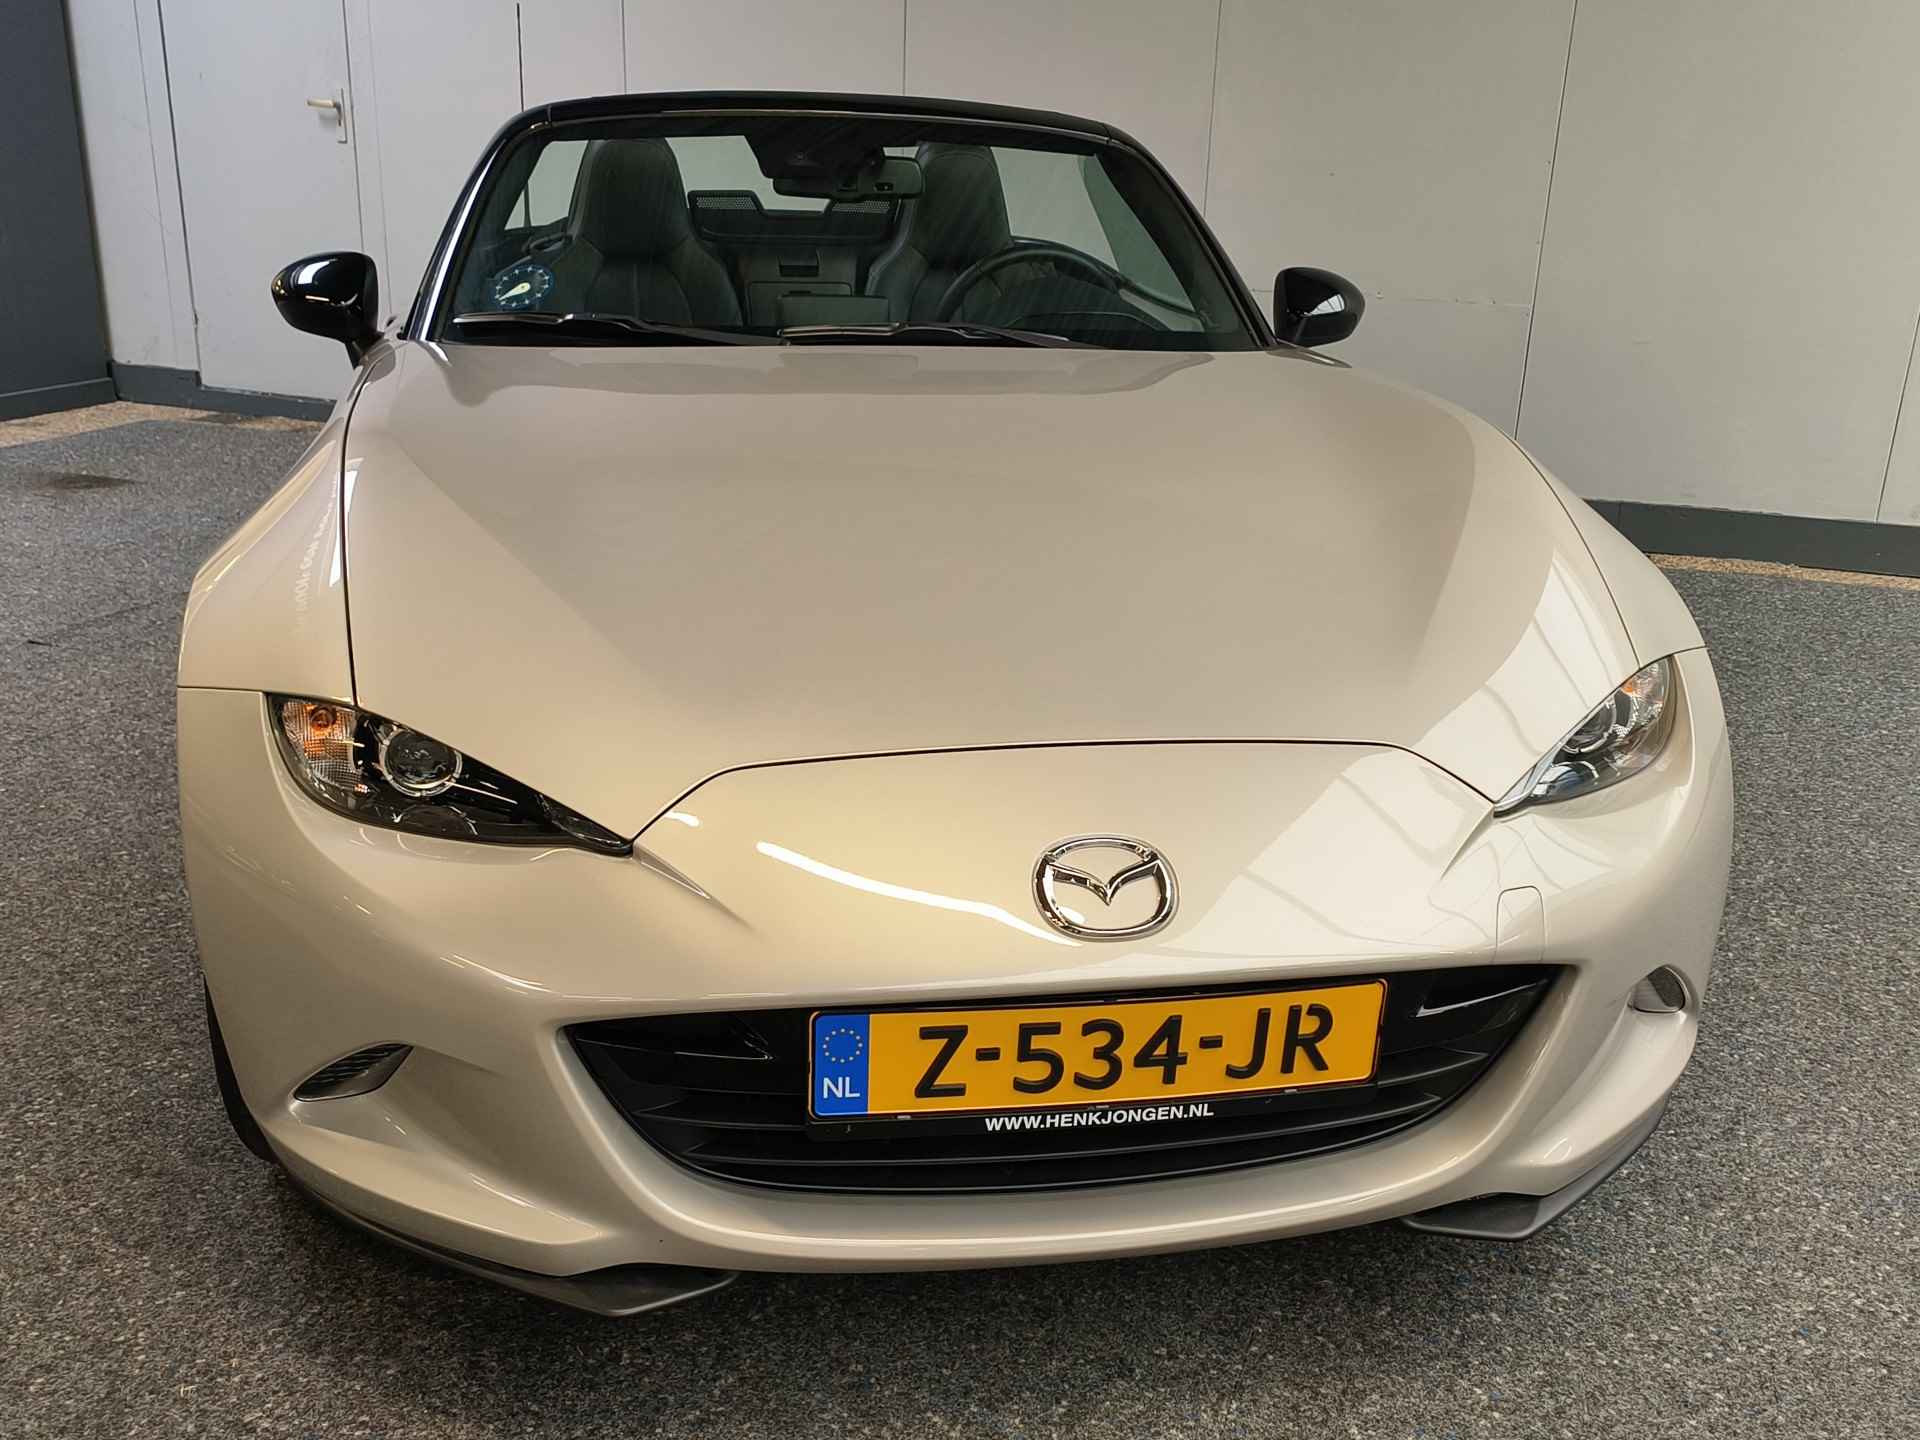 Mazda MX-5 1.5 SkyActiv-G 132 Rijklaar + Fabrieks garantie tot 11-2025 Henk Jongen Auto's in Helmond,  al 50 jaar service zoals 't hoort! - 6/32